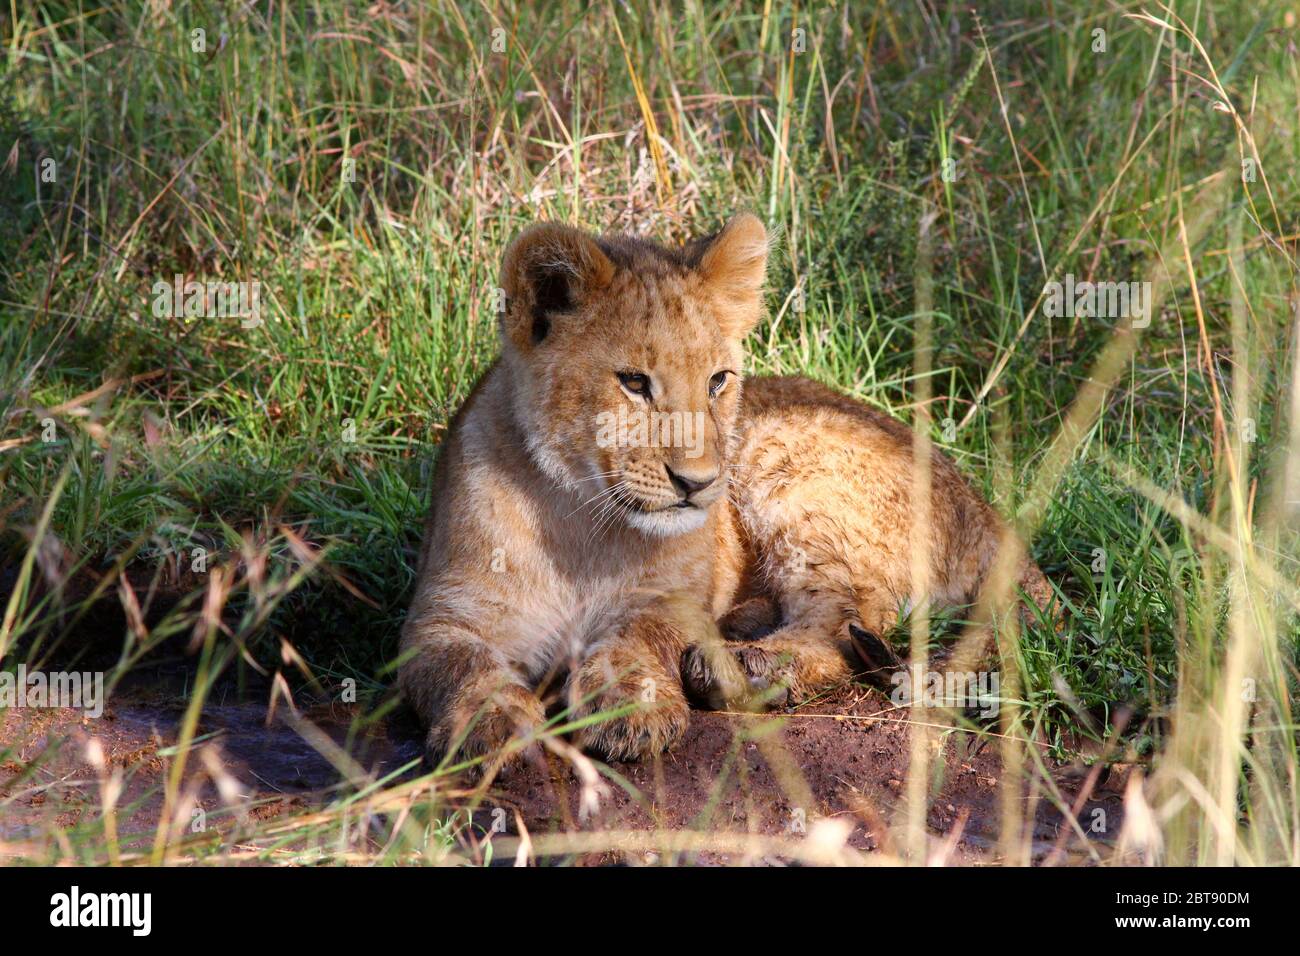 Portrait de Lion, des petits couchés détendus et attentifs dans l'herbe de la savane kenyane au soleil Banque D'Images